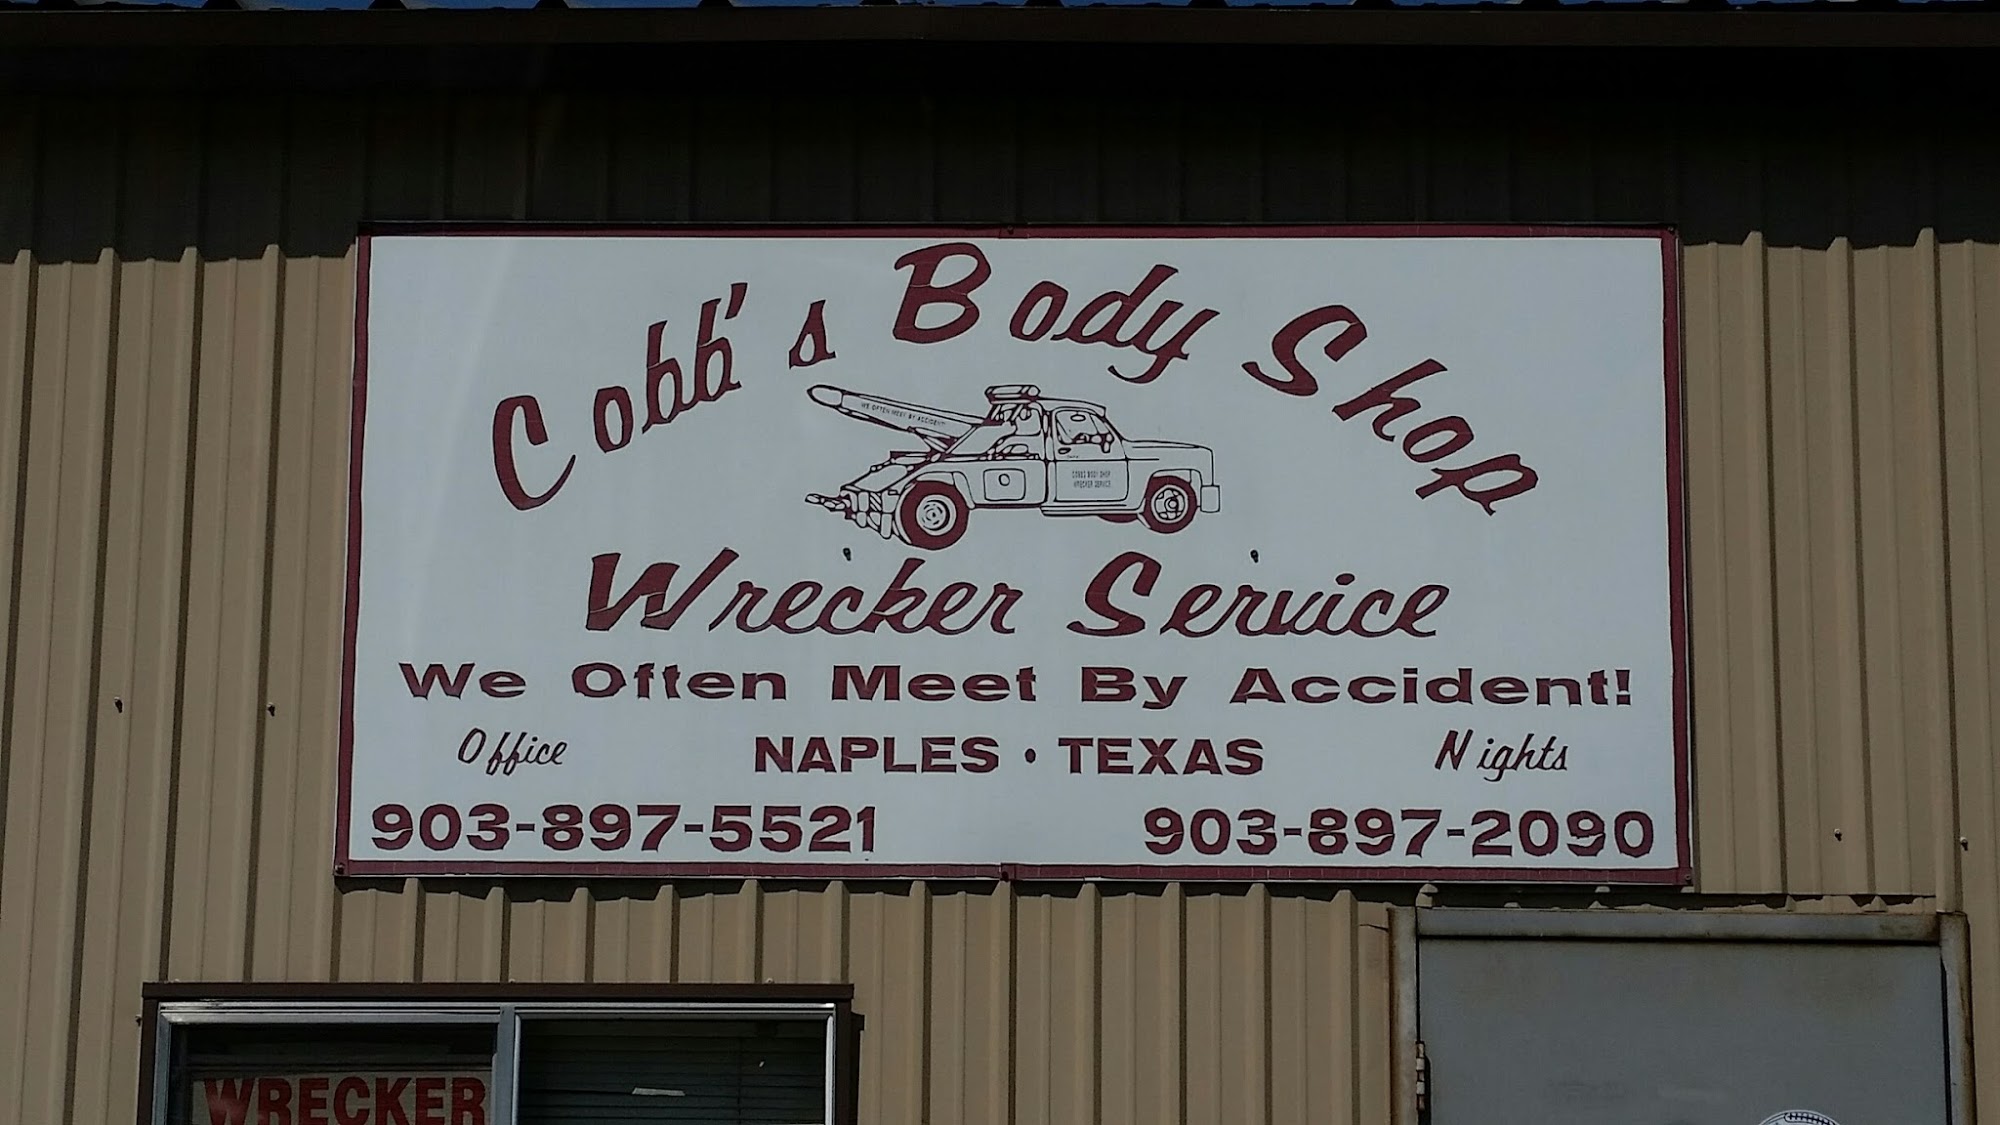 Cobb's Body Shop & Wrecker Service